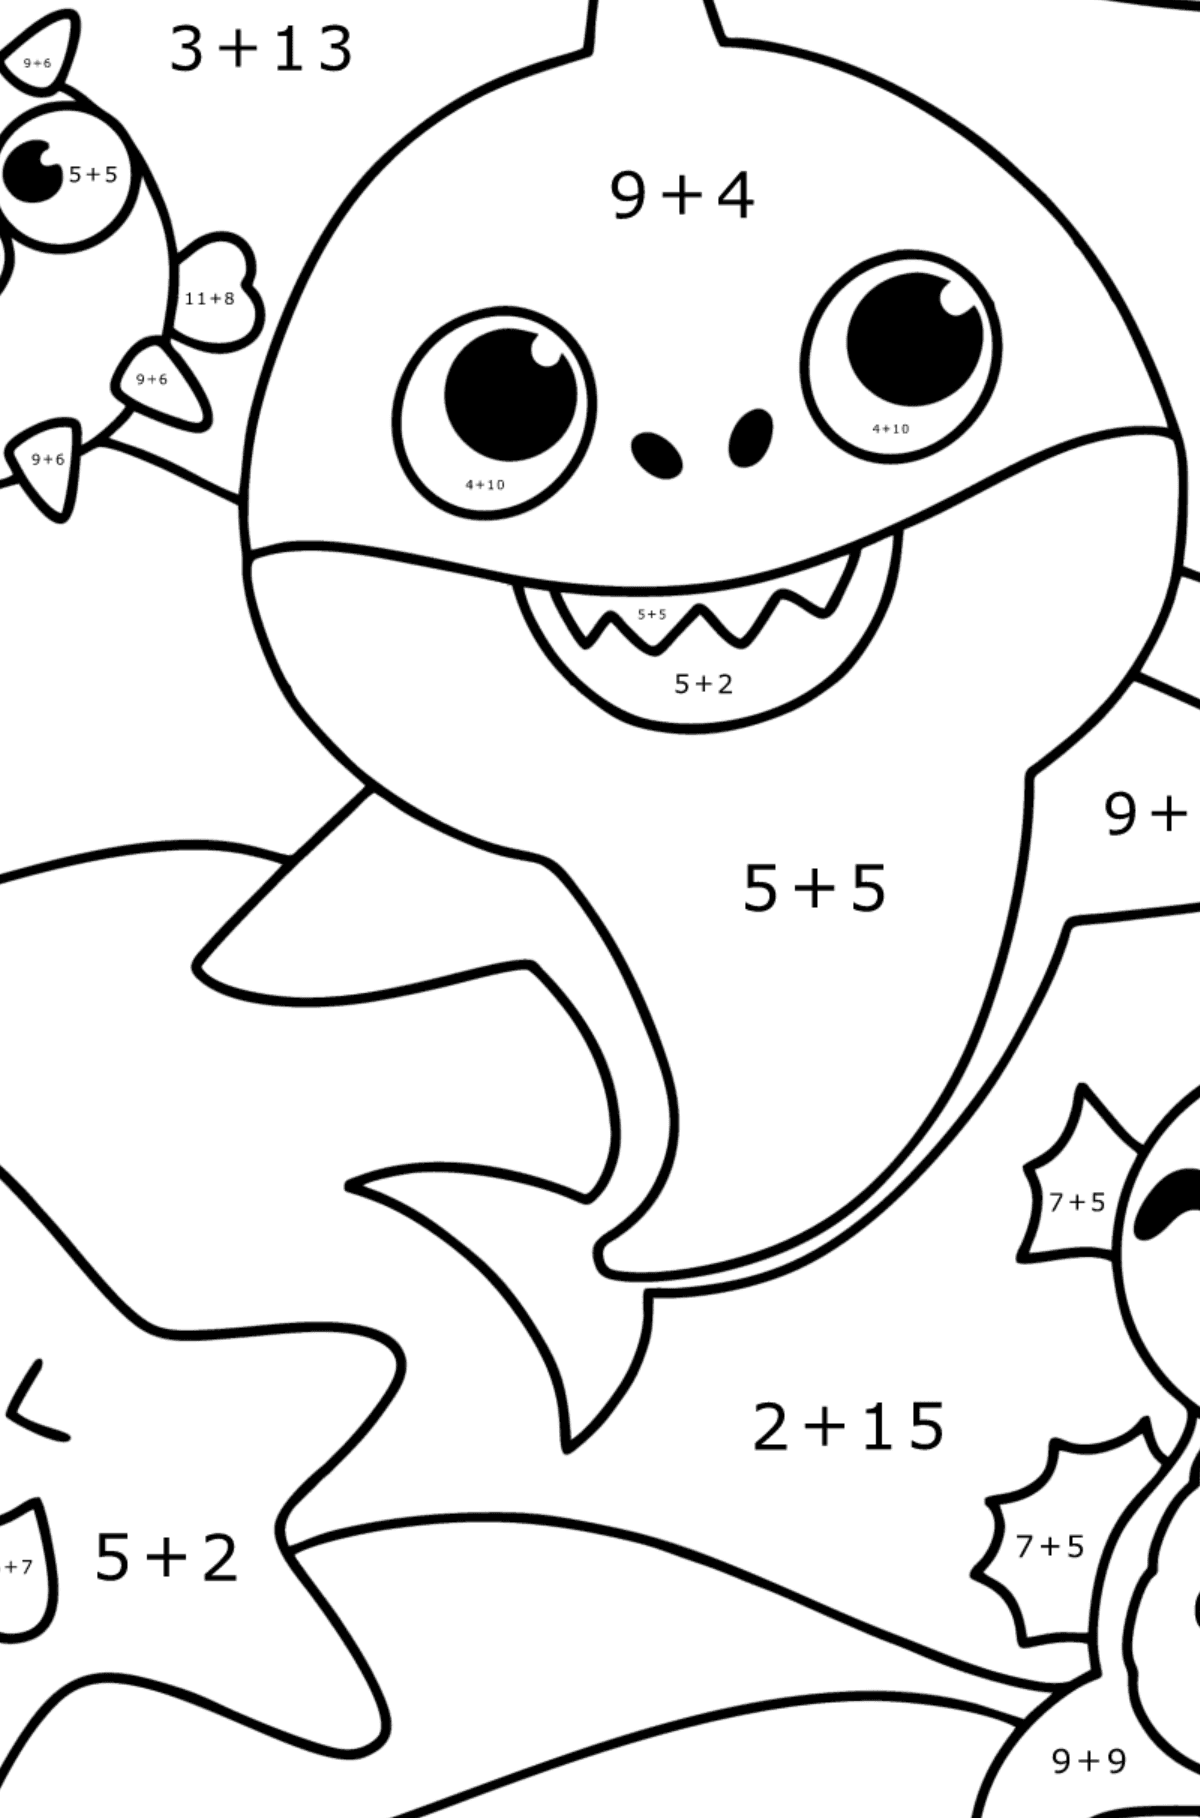 Venner Baby Shark tegning til fargelegging - Matematisk fargeleggingsside - addisjon for barn